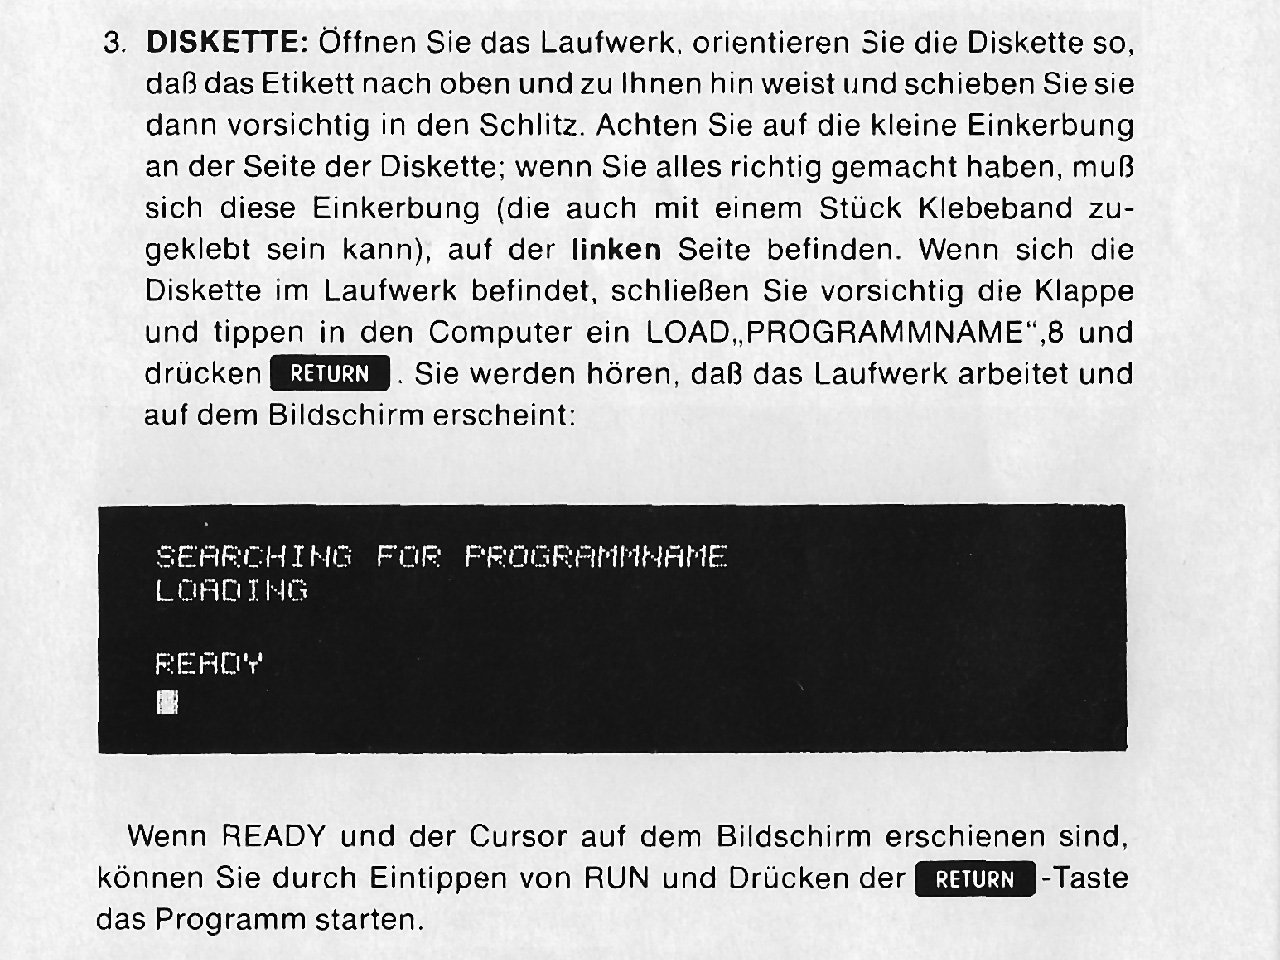 Die ominöse Seite der C64 Anleitung, welche meinen Vater fast in den Wahnsinn trieb. (Quelle: Commodore 64 Microcomputer Handbuch)